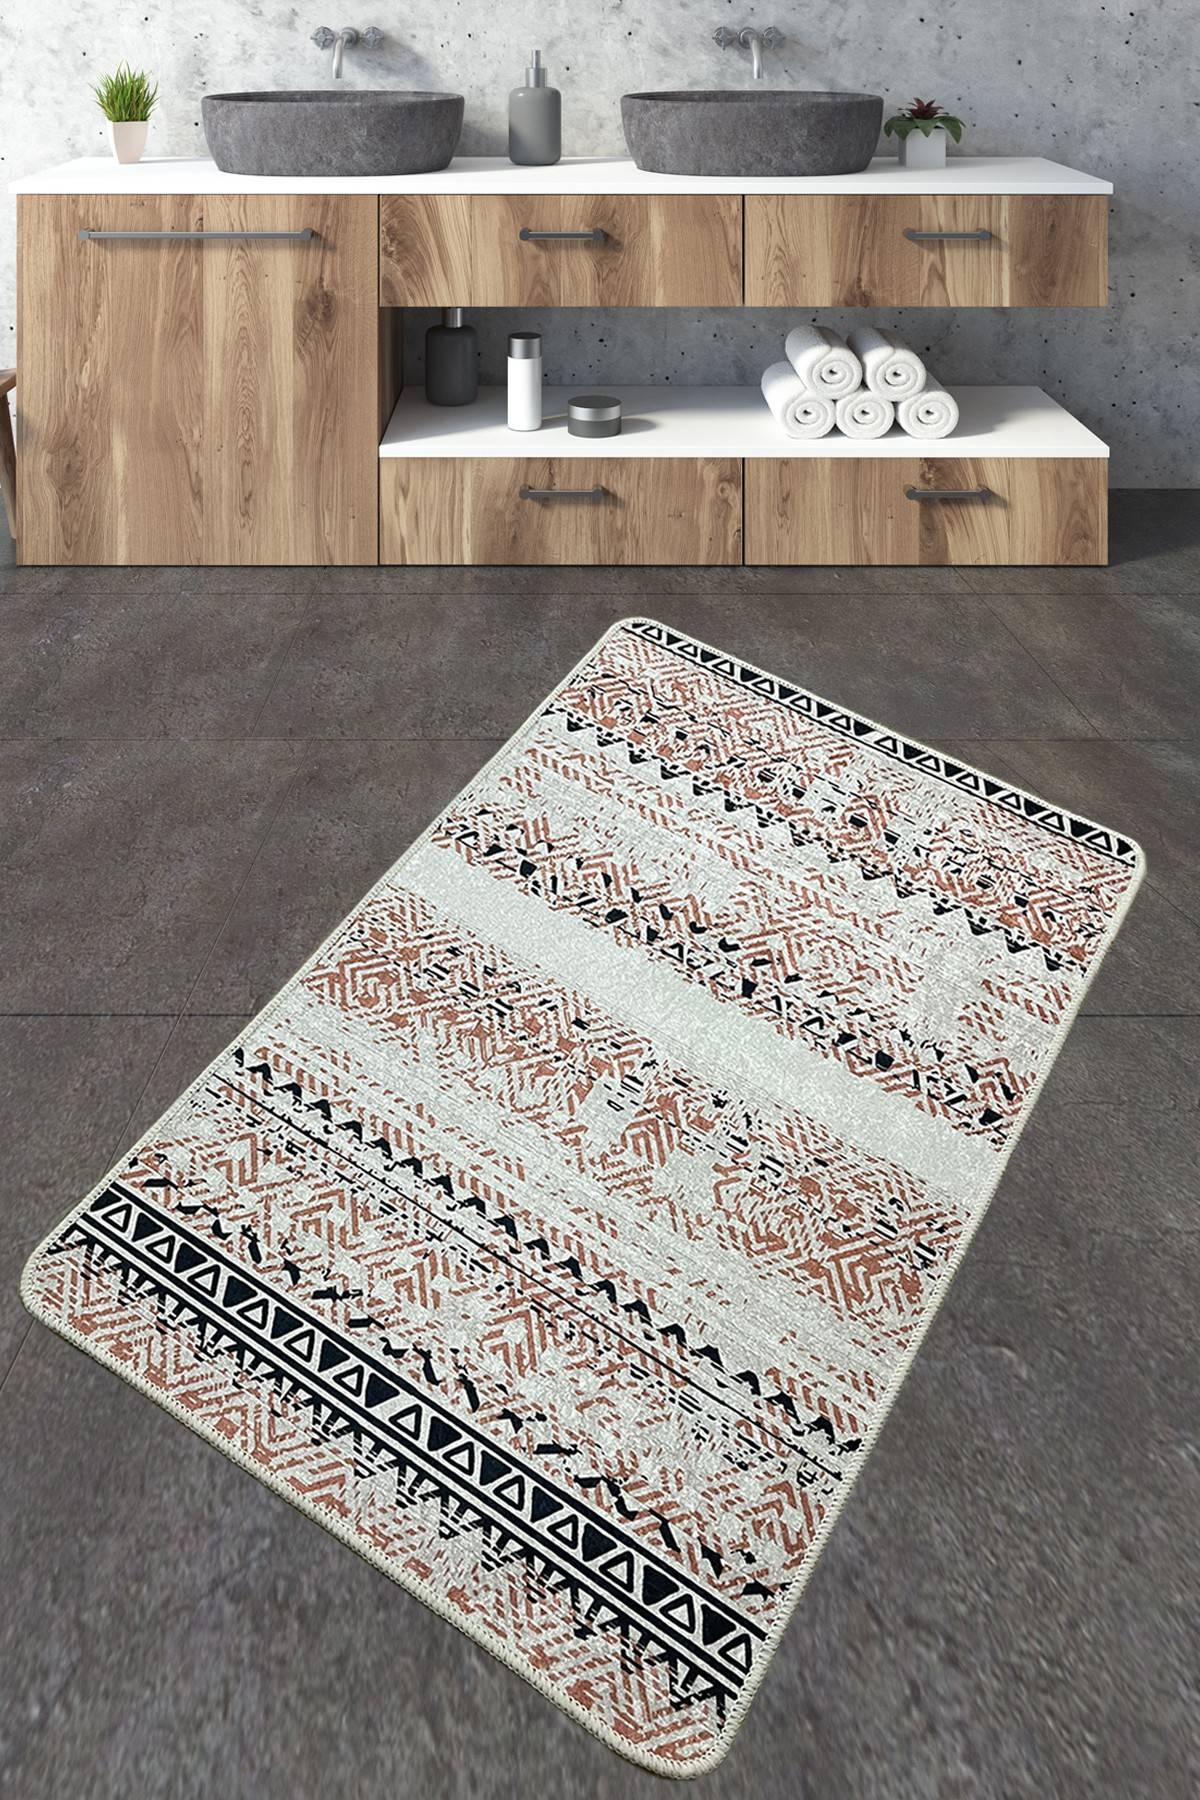 Taouri badkamer tapijt 70x120cm Berber patroon Beige, Bruin en Zwart